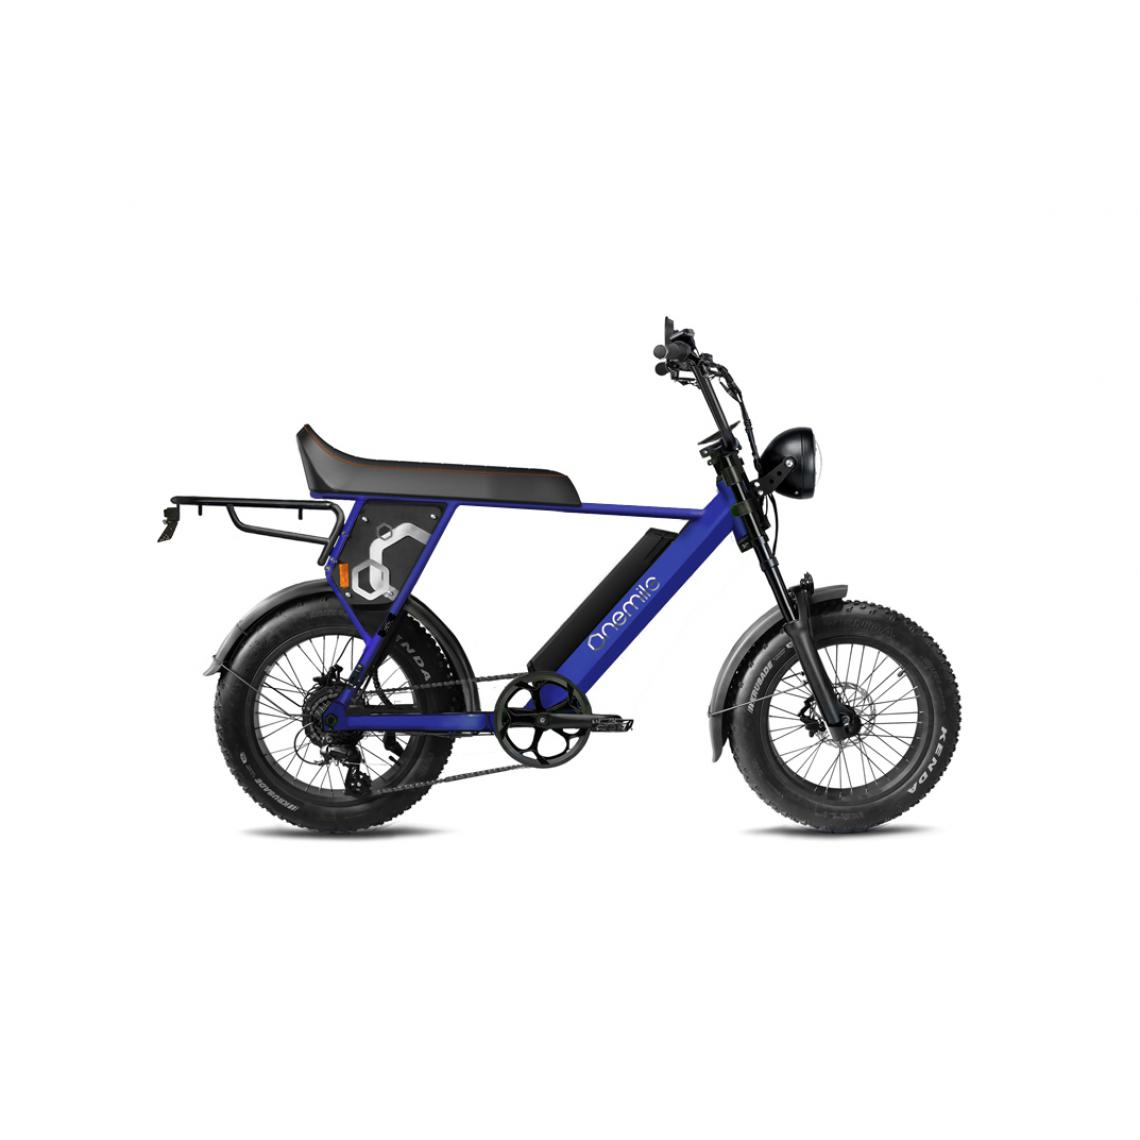 Onemile - Velo Electrique Speedbike ONEMILE Scrambler S 52V 12,4Ah Bleu Homologué Route EEC - Vélo électrique